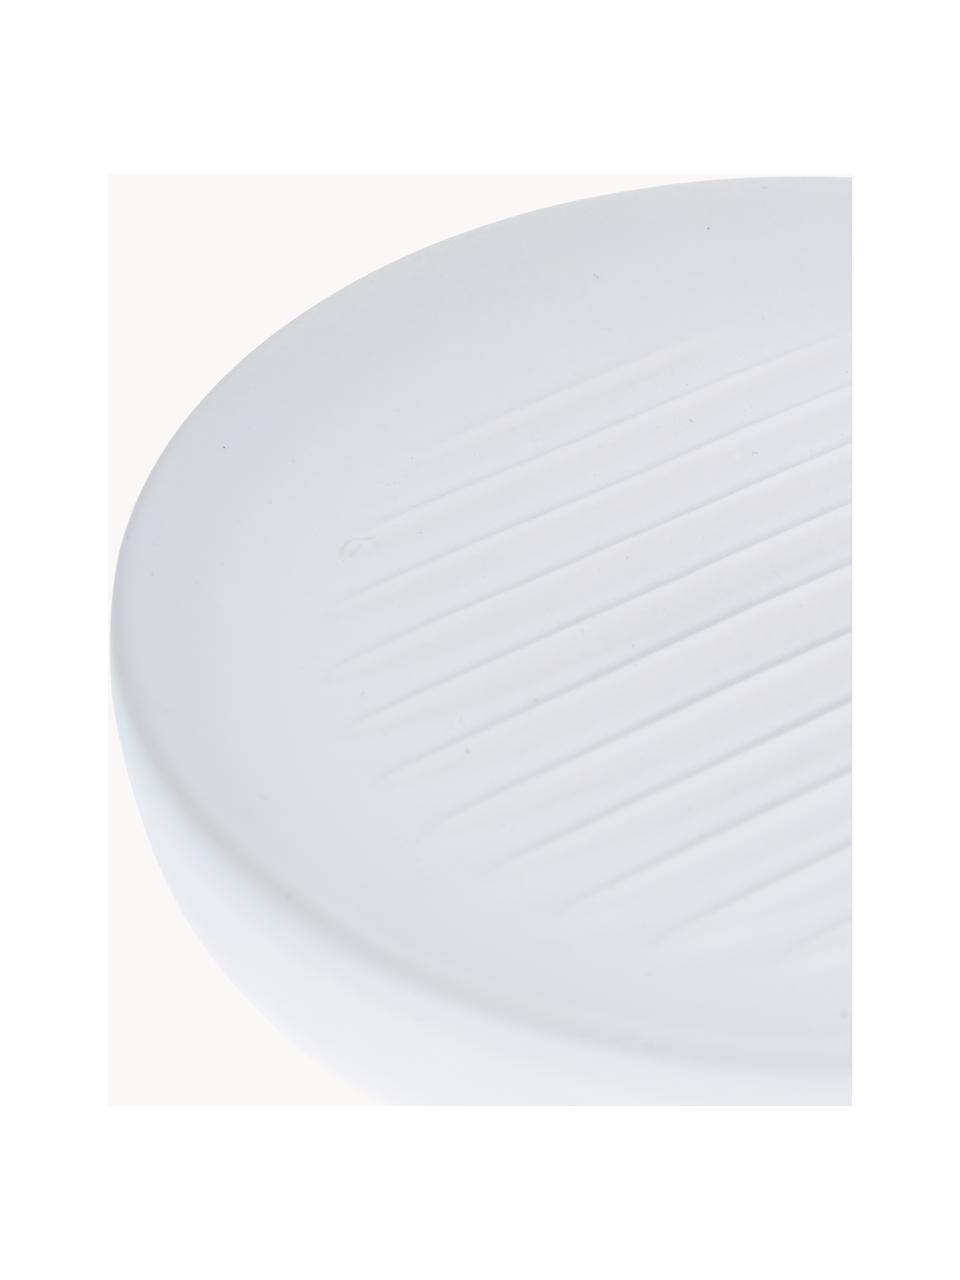 Zeepbakje Ume van keramiek met soft-touch oppervlak, Keramiek overtrokken met een soft-touch oppervlak (kunststof), Wit, Ø 12 x H 3 cm